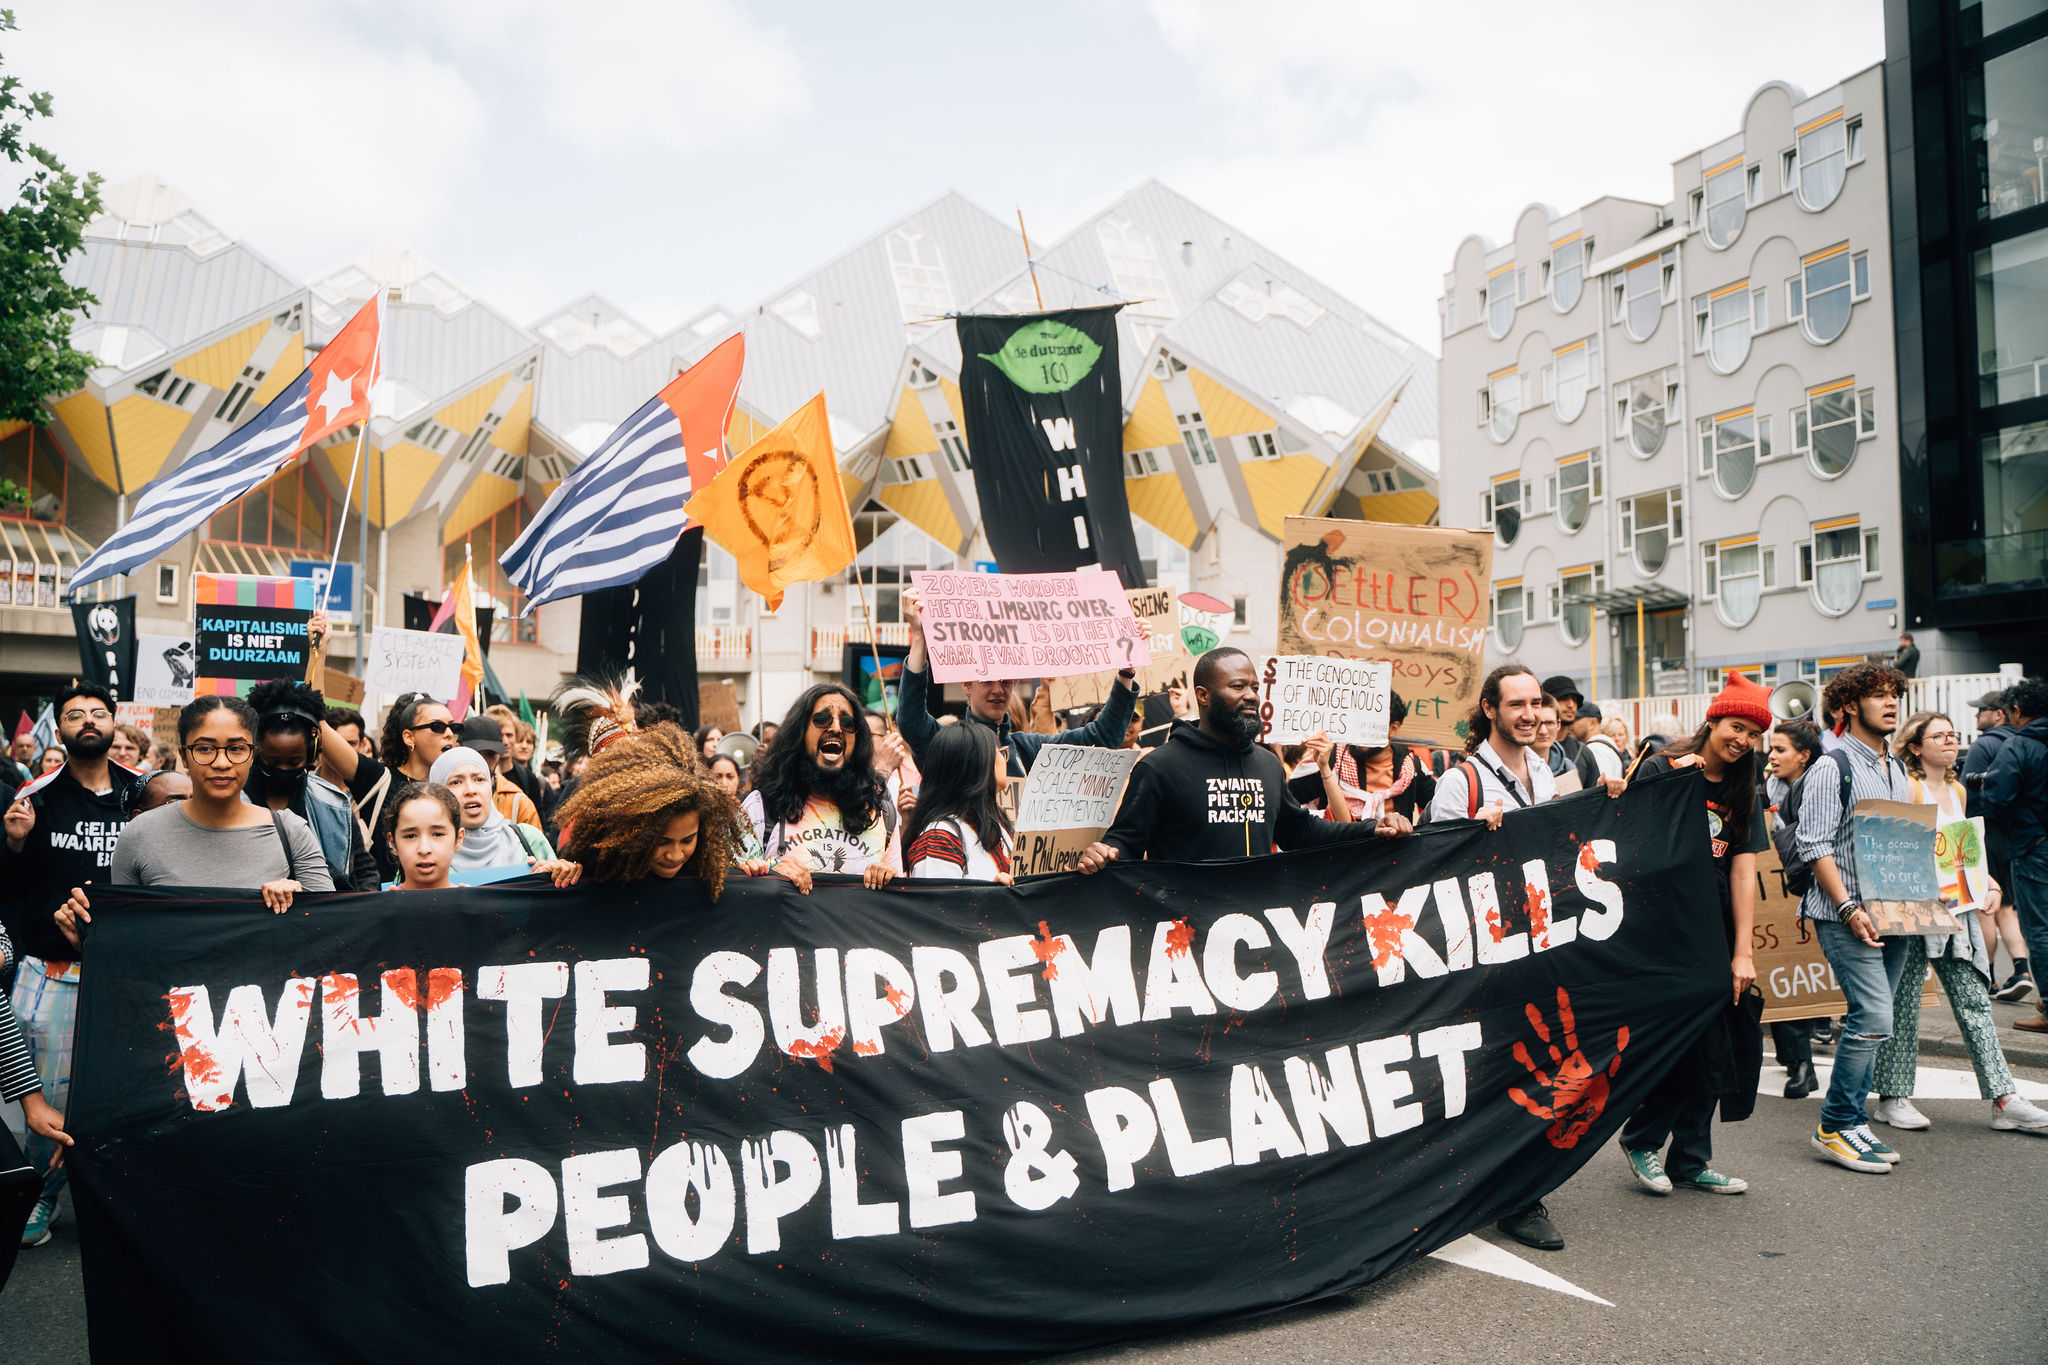 Deelnemers aan de Klimaatmars in Rotterdam dragen een banner met de tekst 'White supremacy kills people & planet'